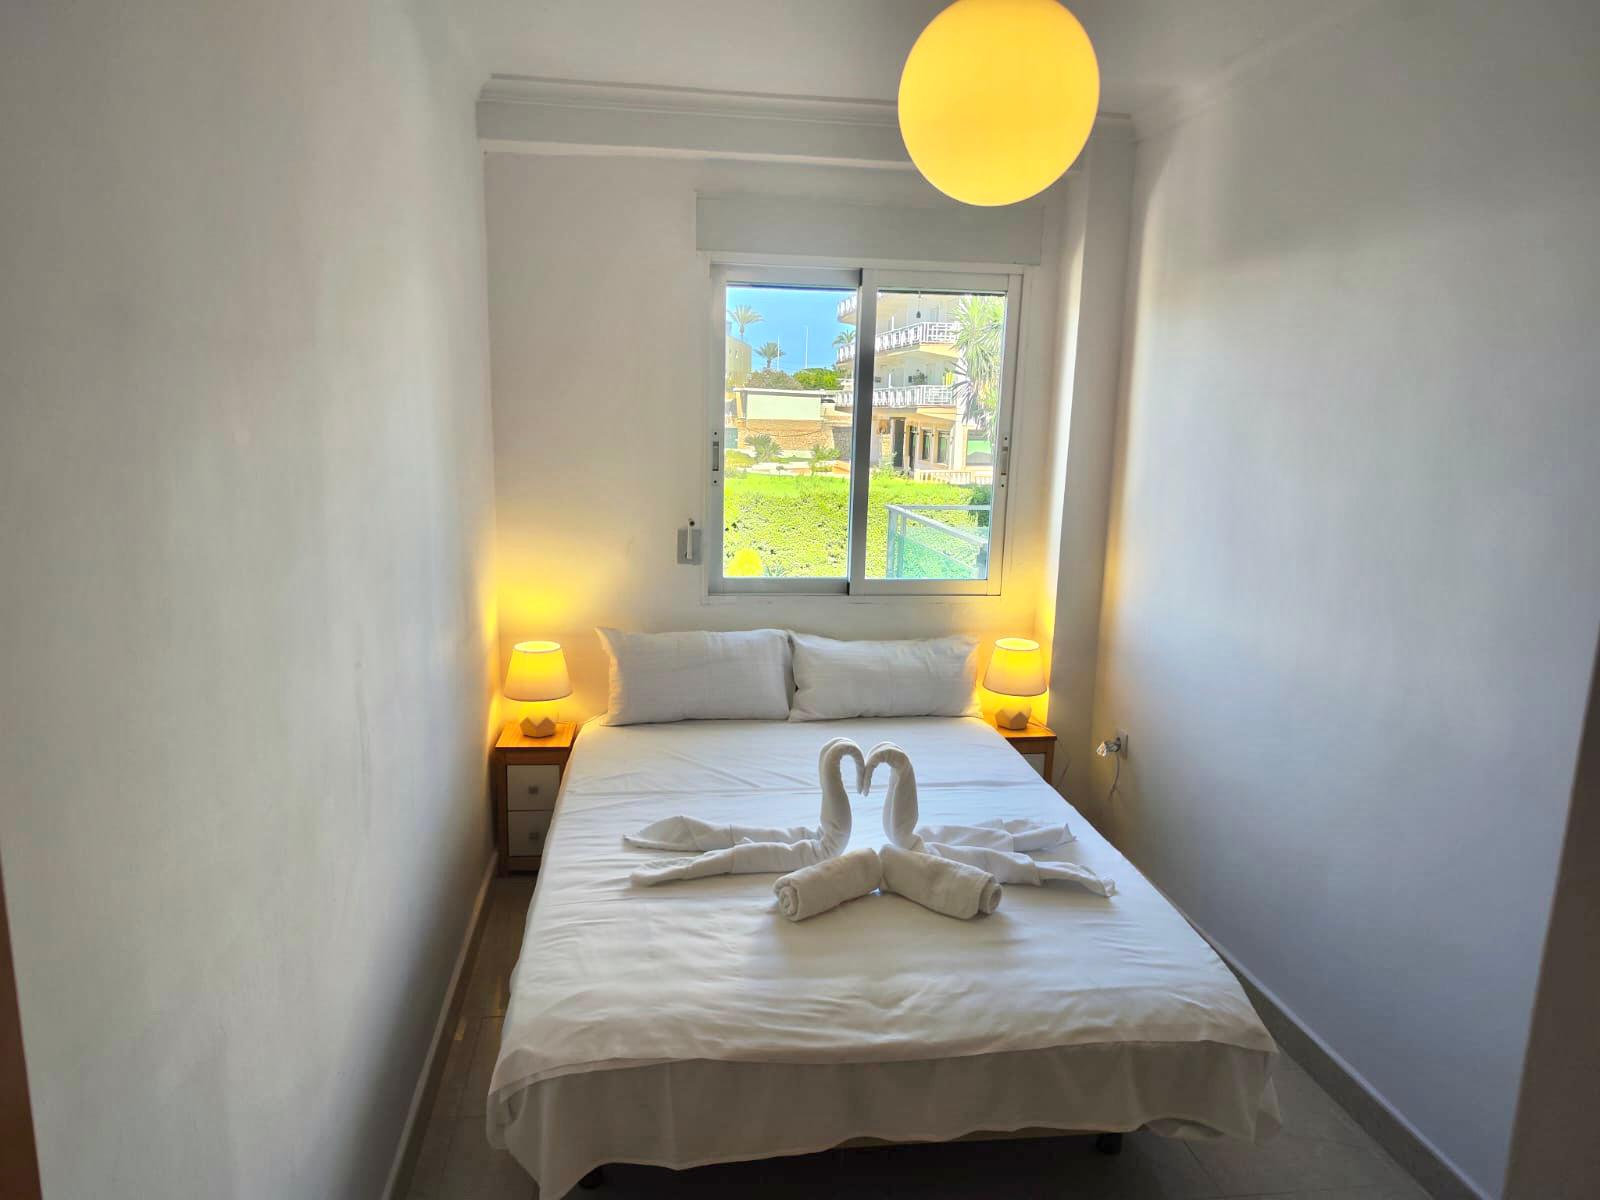 Appartement met 2 slaapkamers te koop aan het strand van het zandstrand van Javea